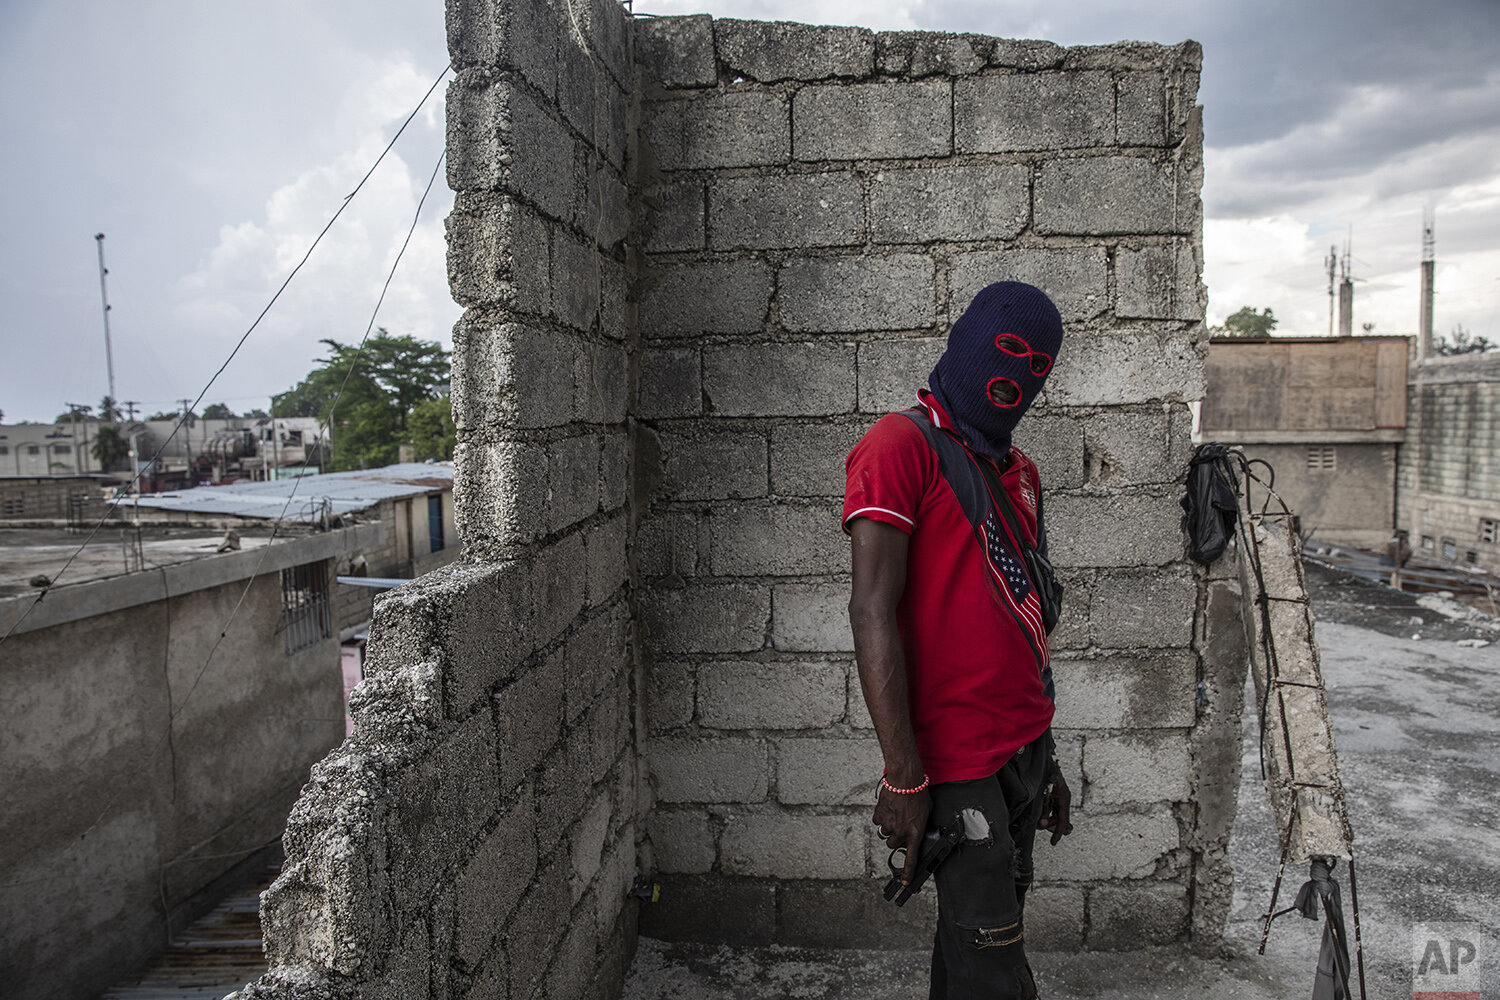 Haiti Returning to Chaos